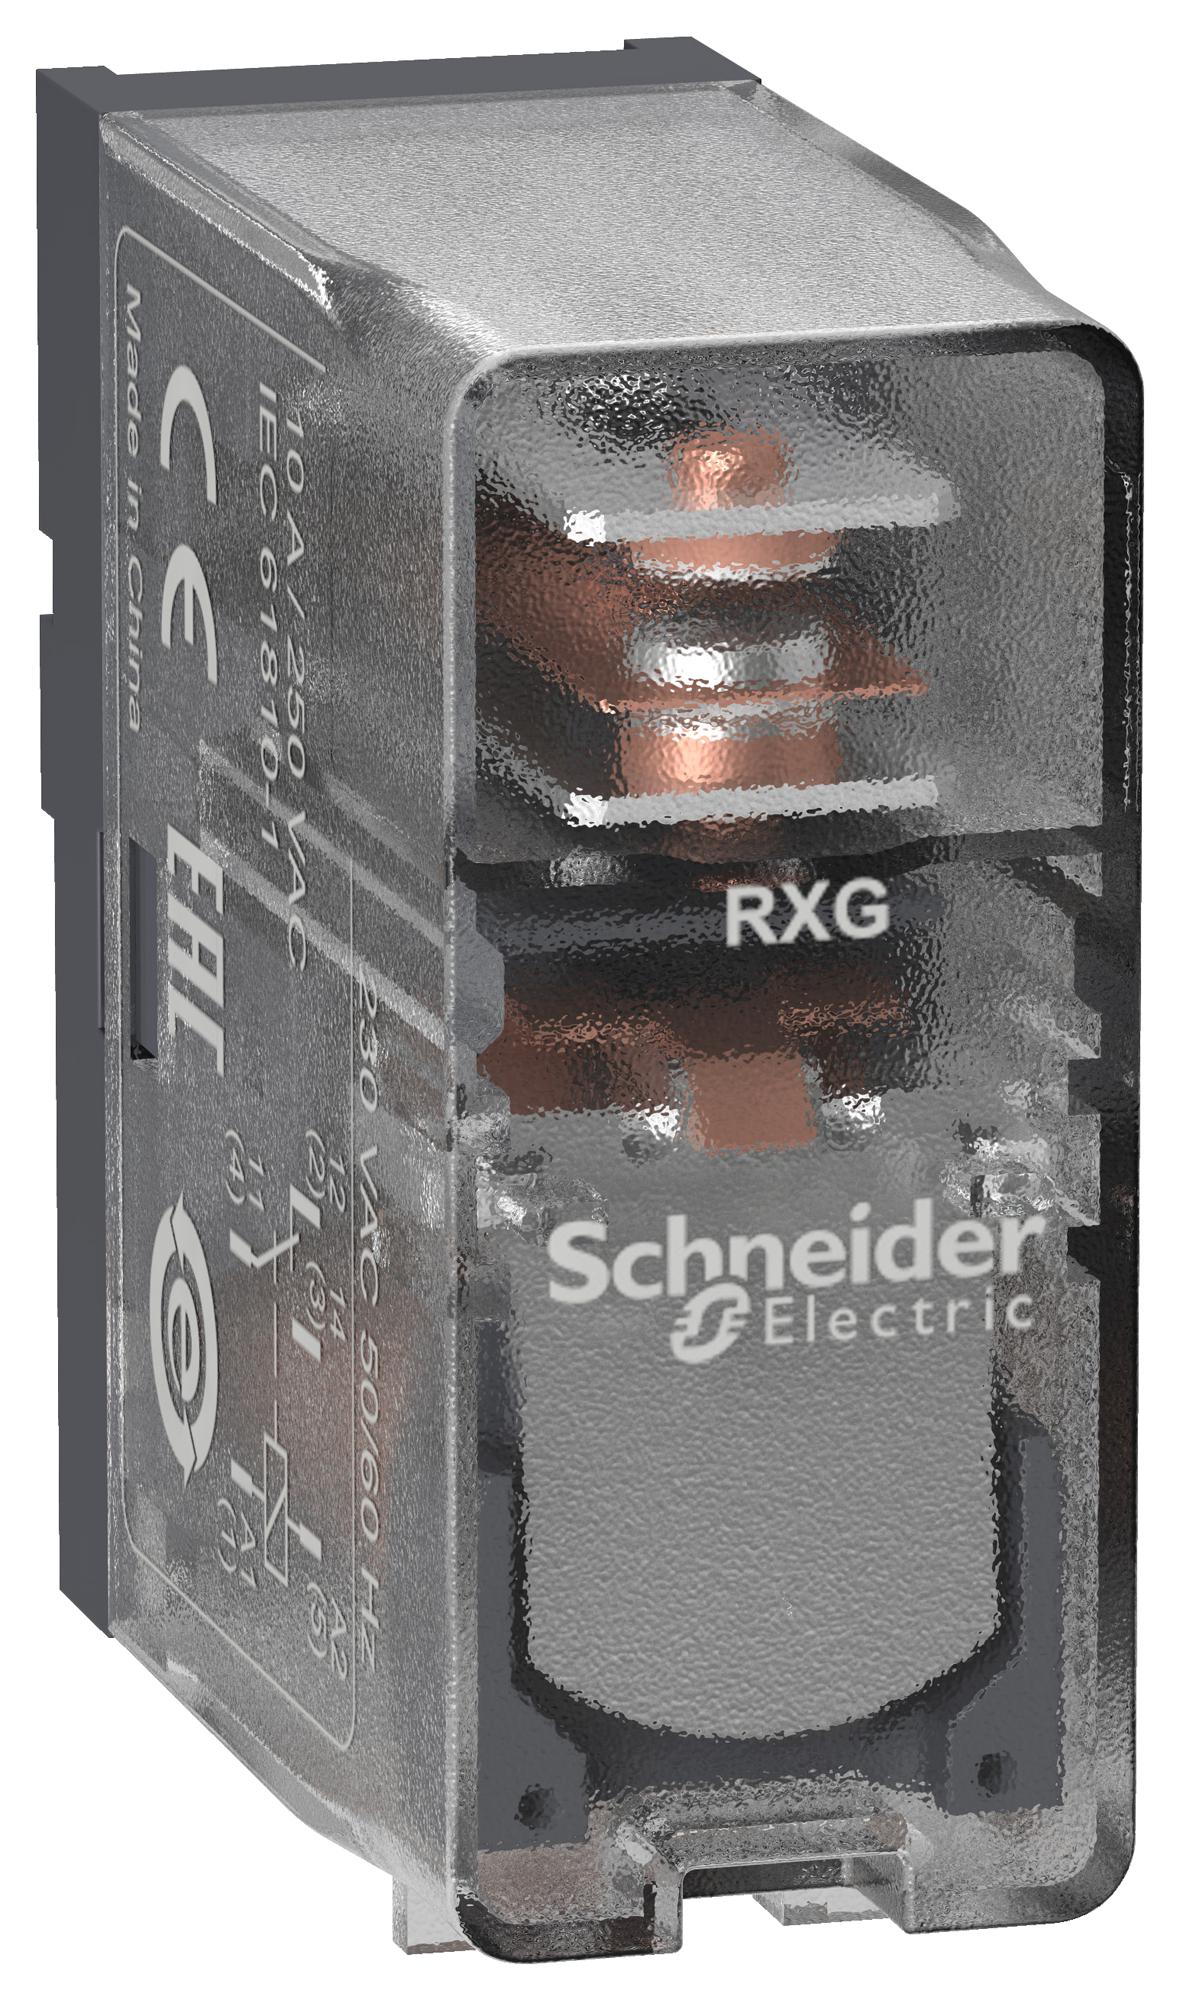 RXG15P7 POWER RELAY, SPDT, 10A, 250VAC SCHNEIDER ELECTRIC